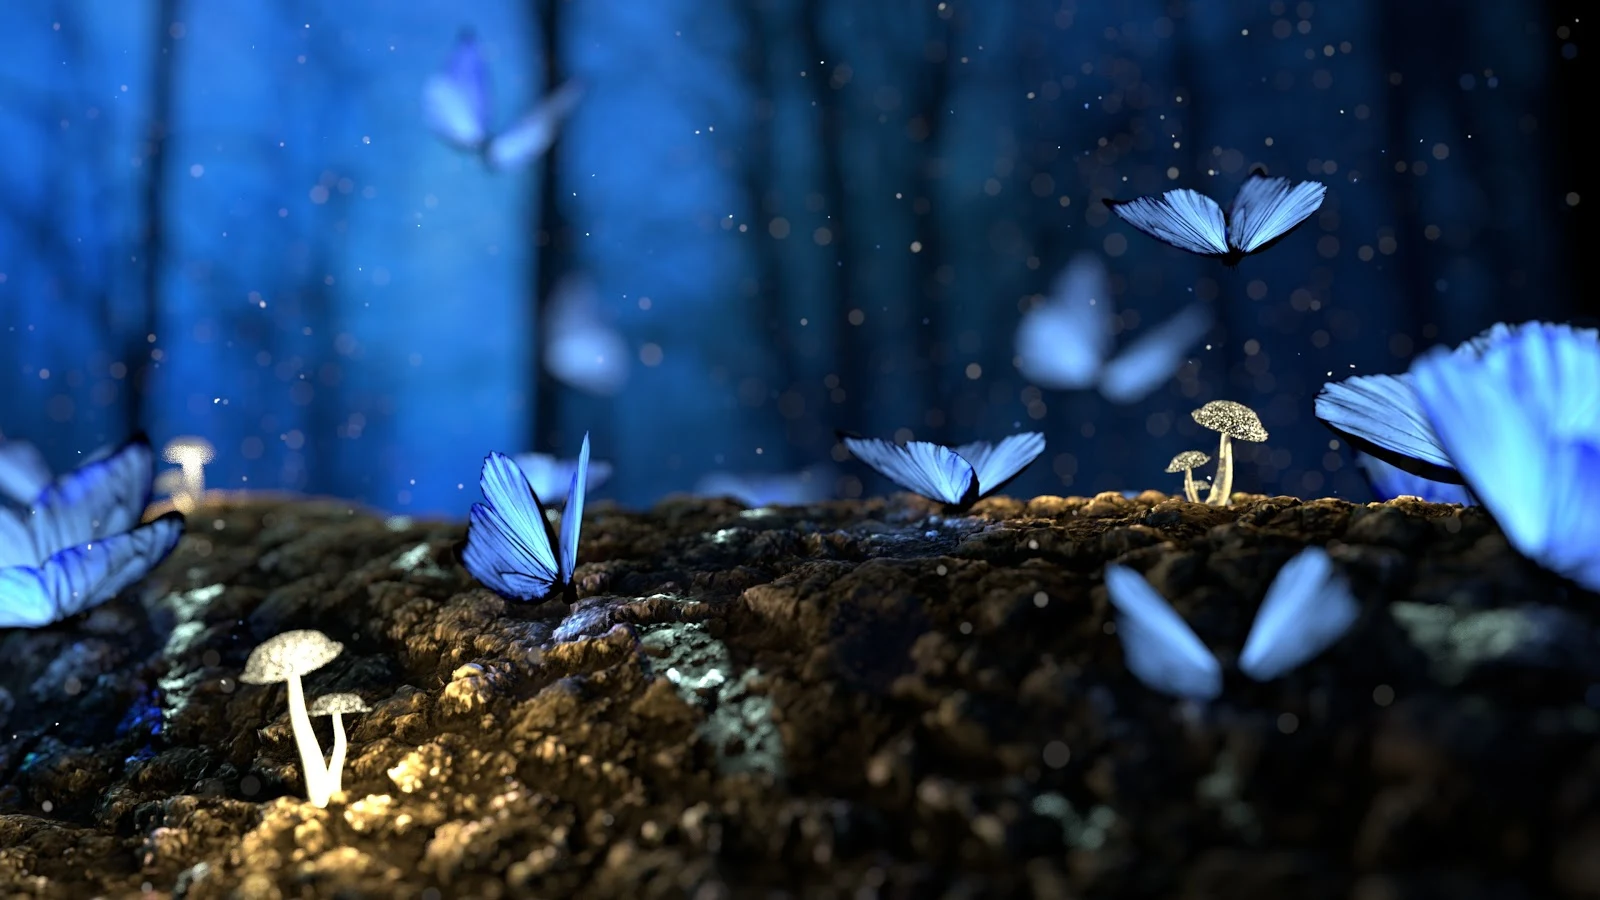 薄暗い森の中の白い小さな茸と共に青い蝶が何匹も集まっている